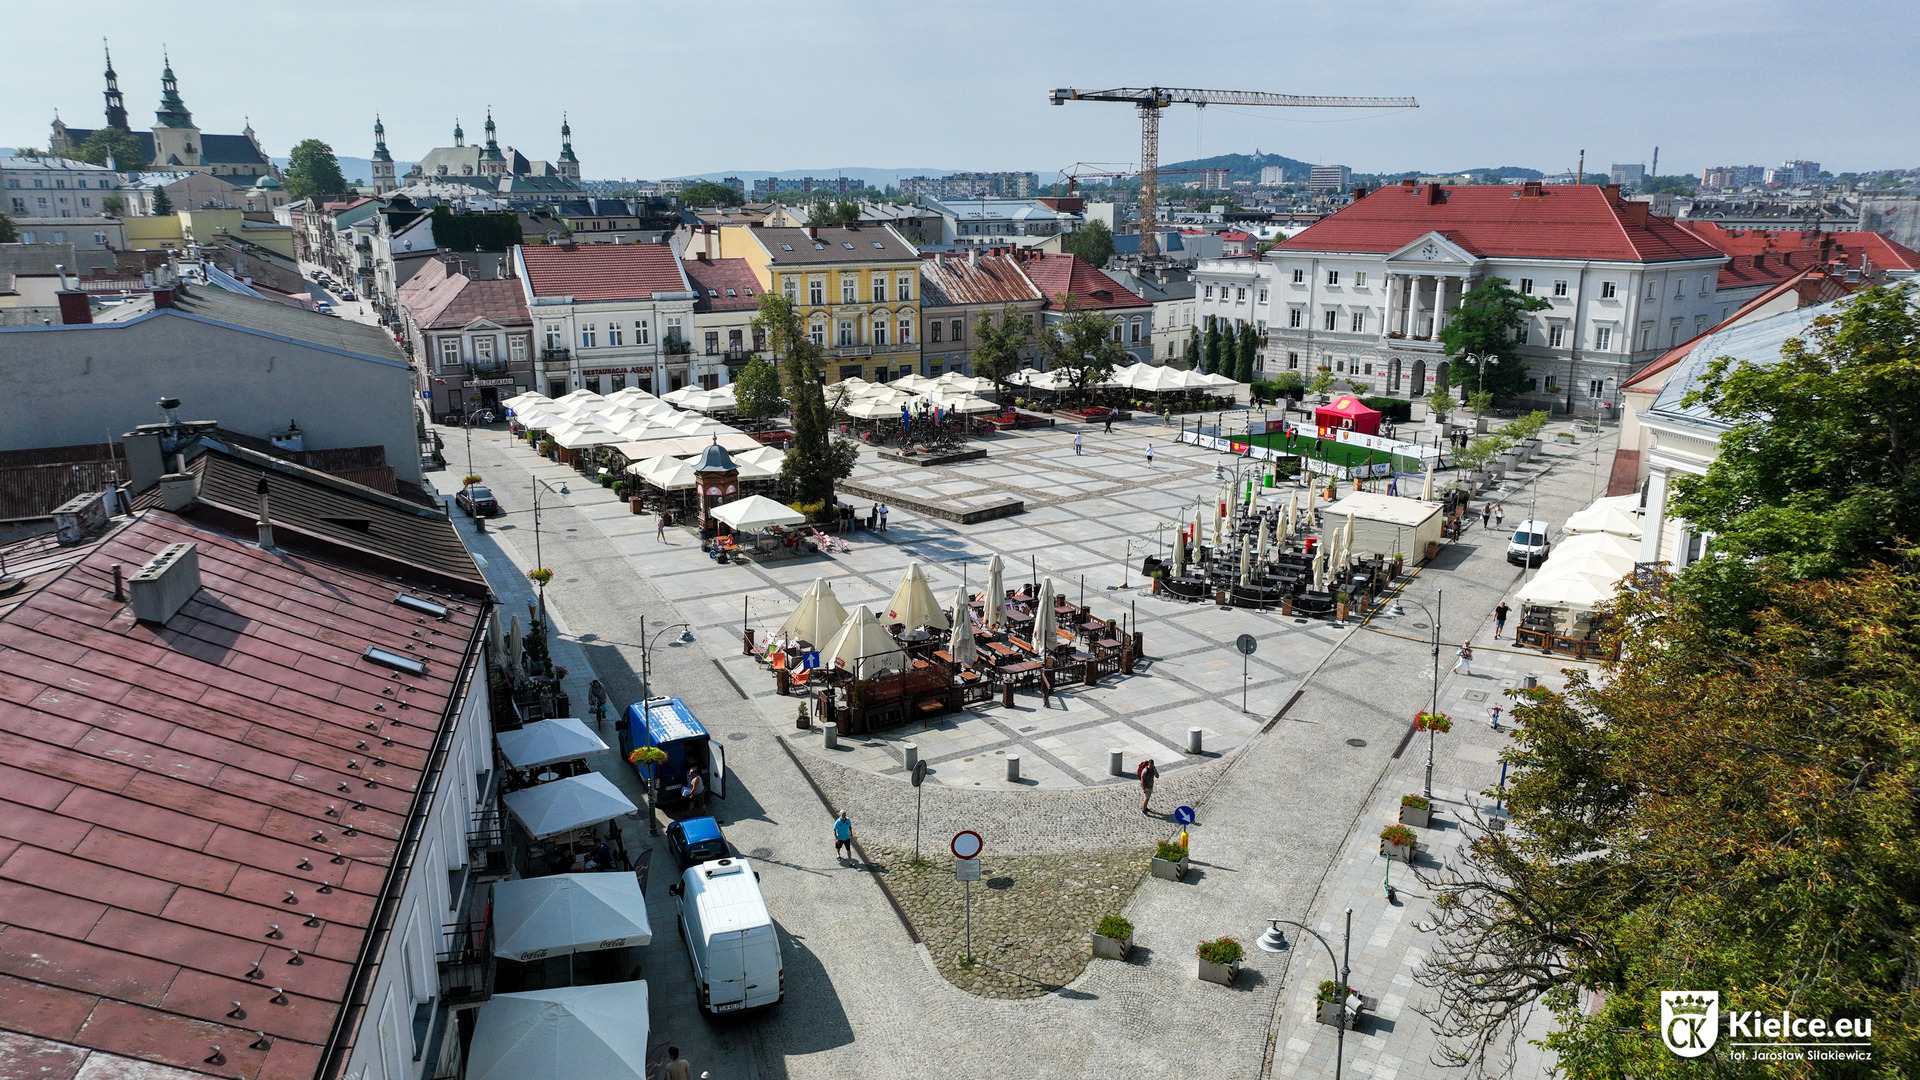 Rynek w Kielcach widok od strony ul. Bodzentyńskiej